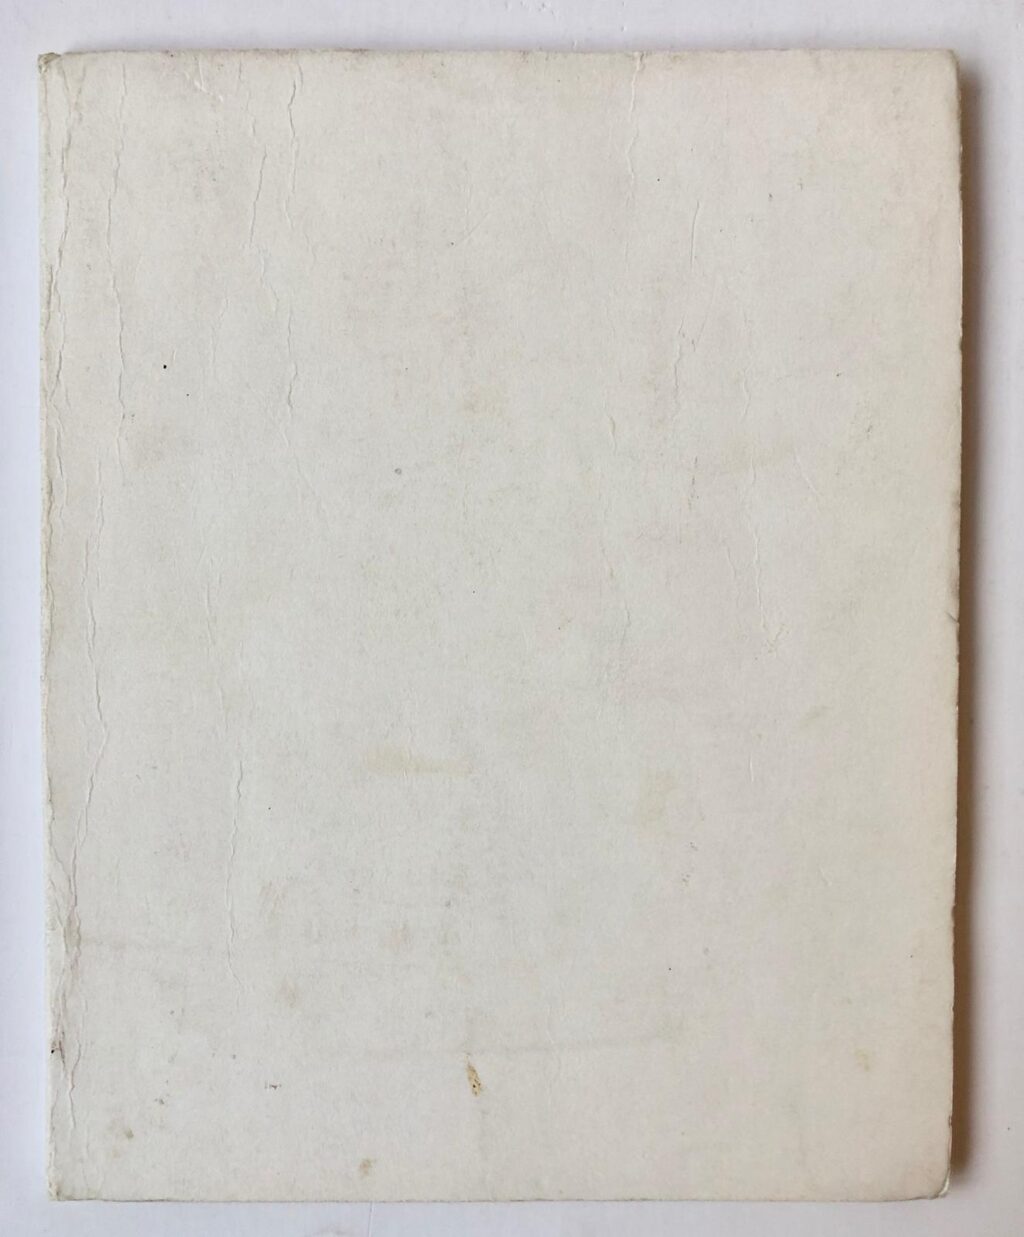 [MANUSCRIPT, 1930] HAAN, ELISABETH J. DE -- Manuscript van een toneelstuk 'Vaders Verzen' door Elisabeth J. de Haan. 4°, 94 pag. w. s. ca. 1930. Gebonden in kartonnen omslag.